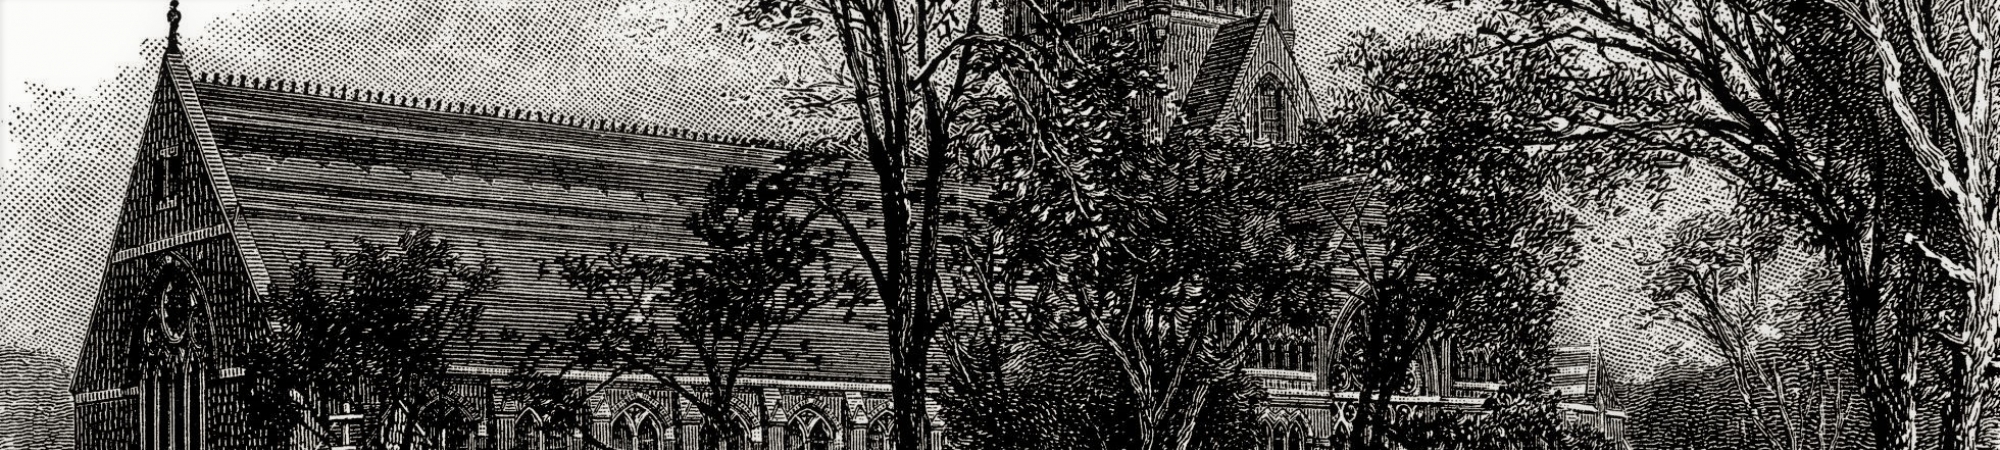 Harvard, Memorial Hall - antique illustration